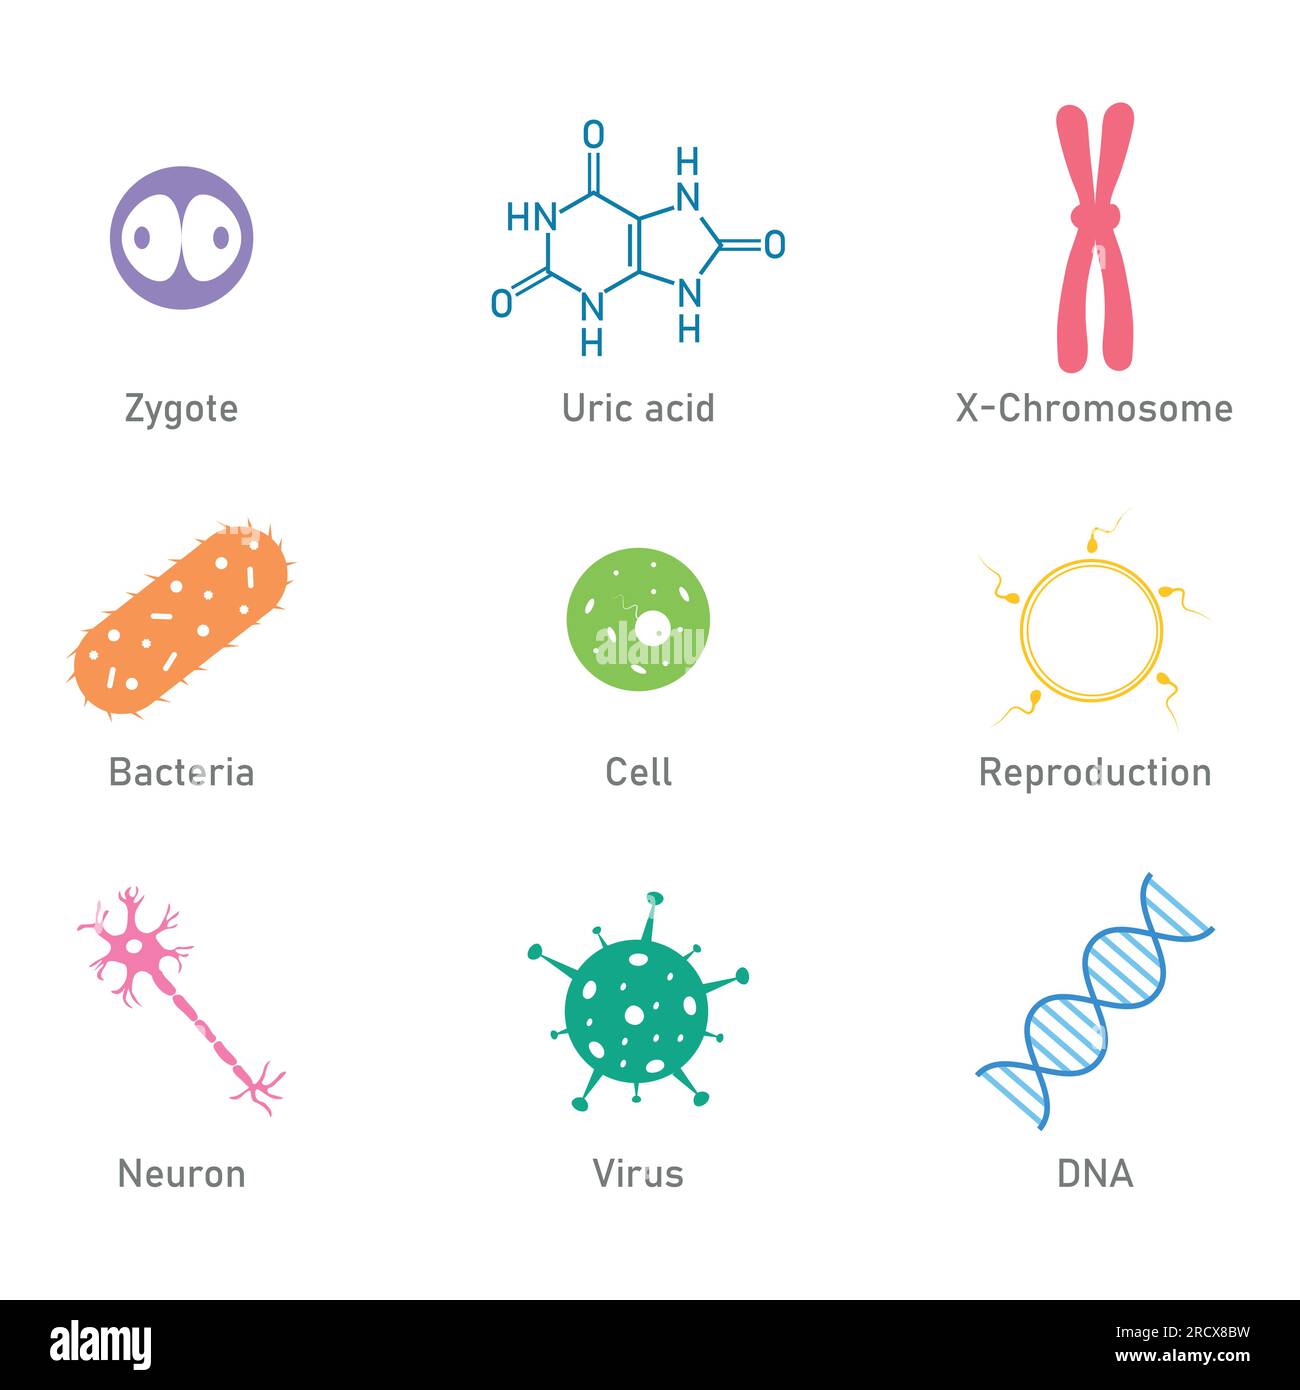 Icône des sciences biologiques. Acide urique, bactéries, cellule, neurone, virus, ADN, reproduction et symbole zygote. Ressources en biologie pour les enseignants et les étudiants. Illustration de Vecteur